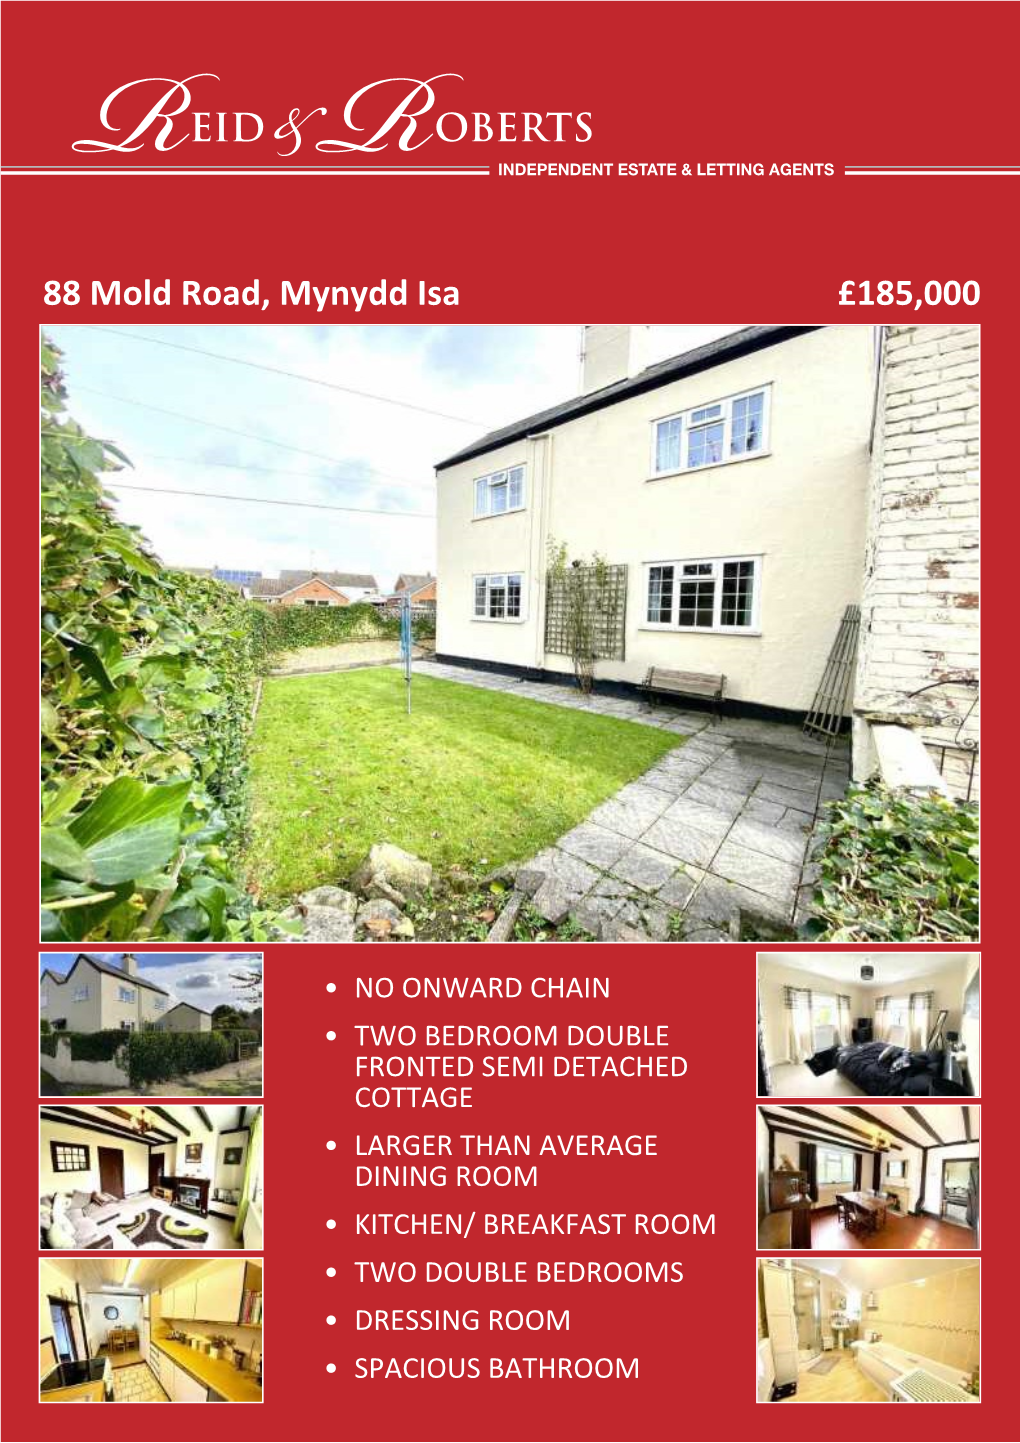 88 Mold Road, Mynydd Isa £185,000